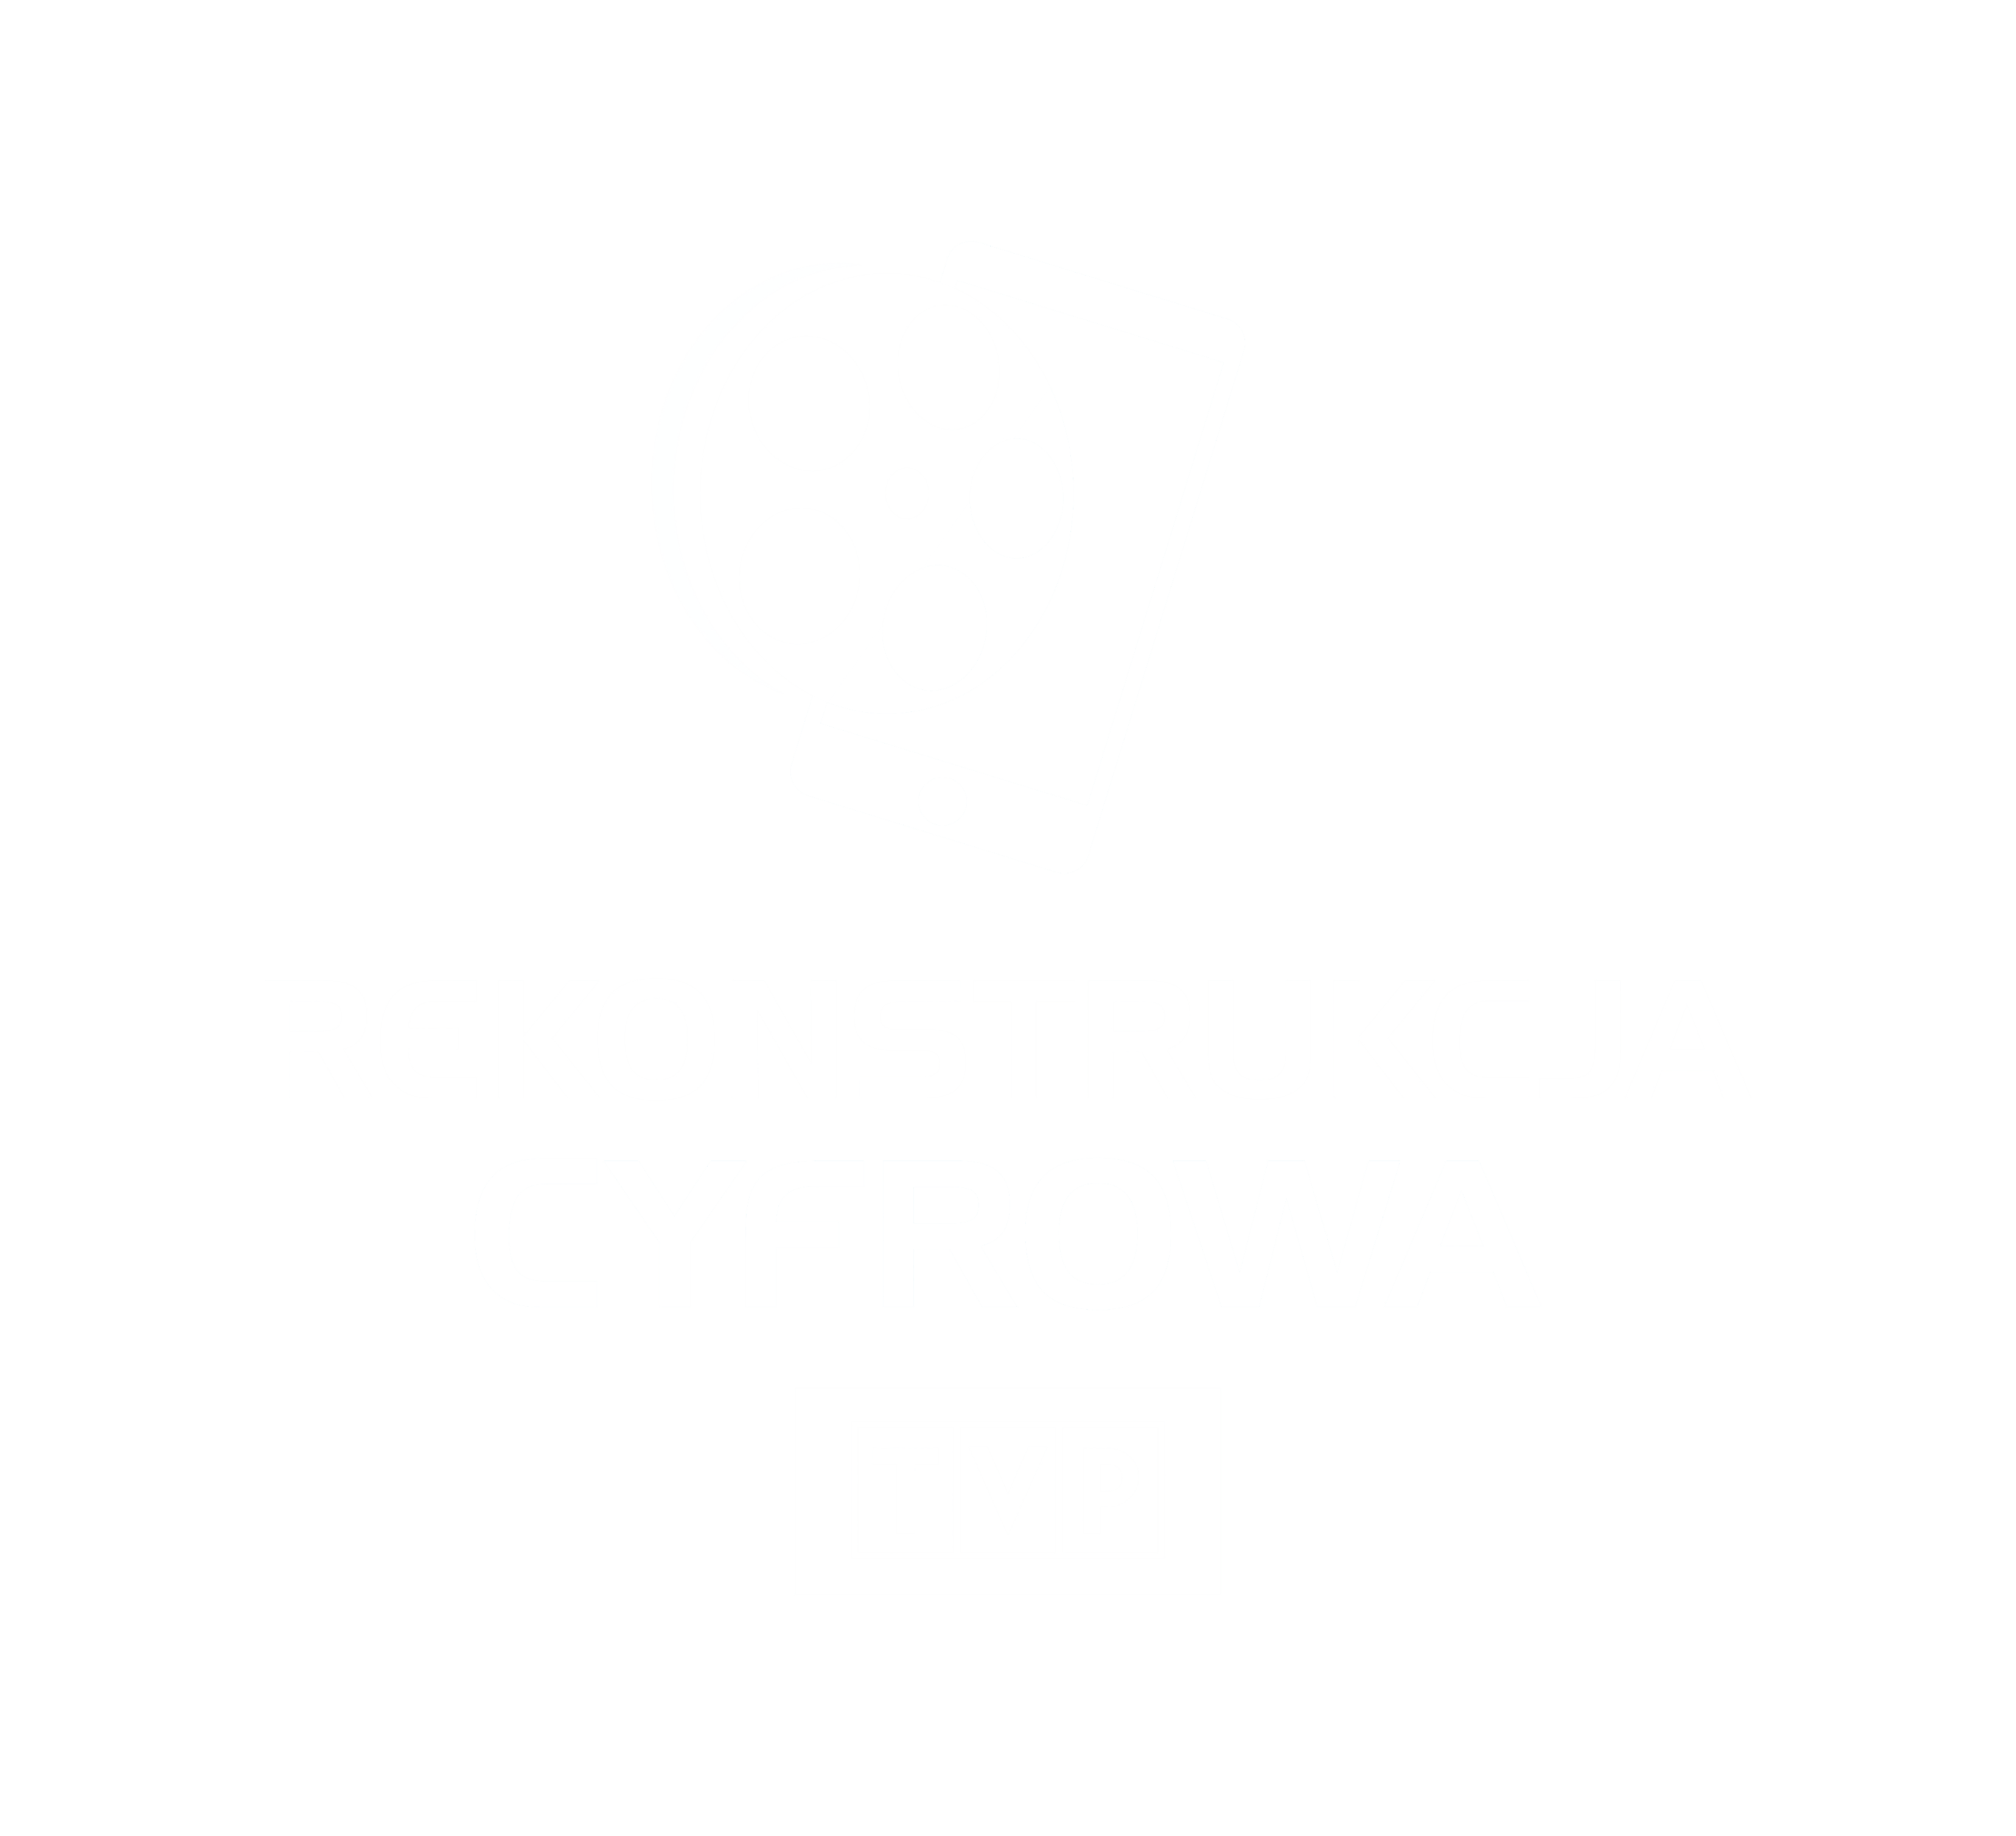 TVP Rekonstrukcja